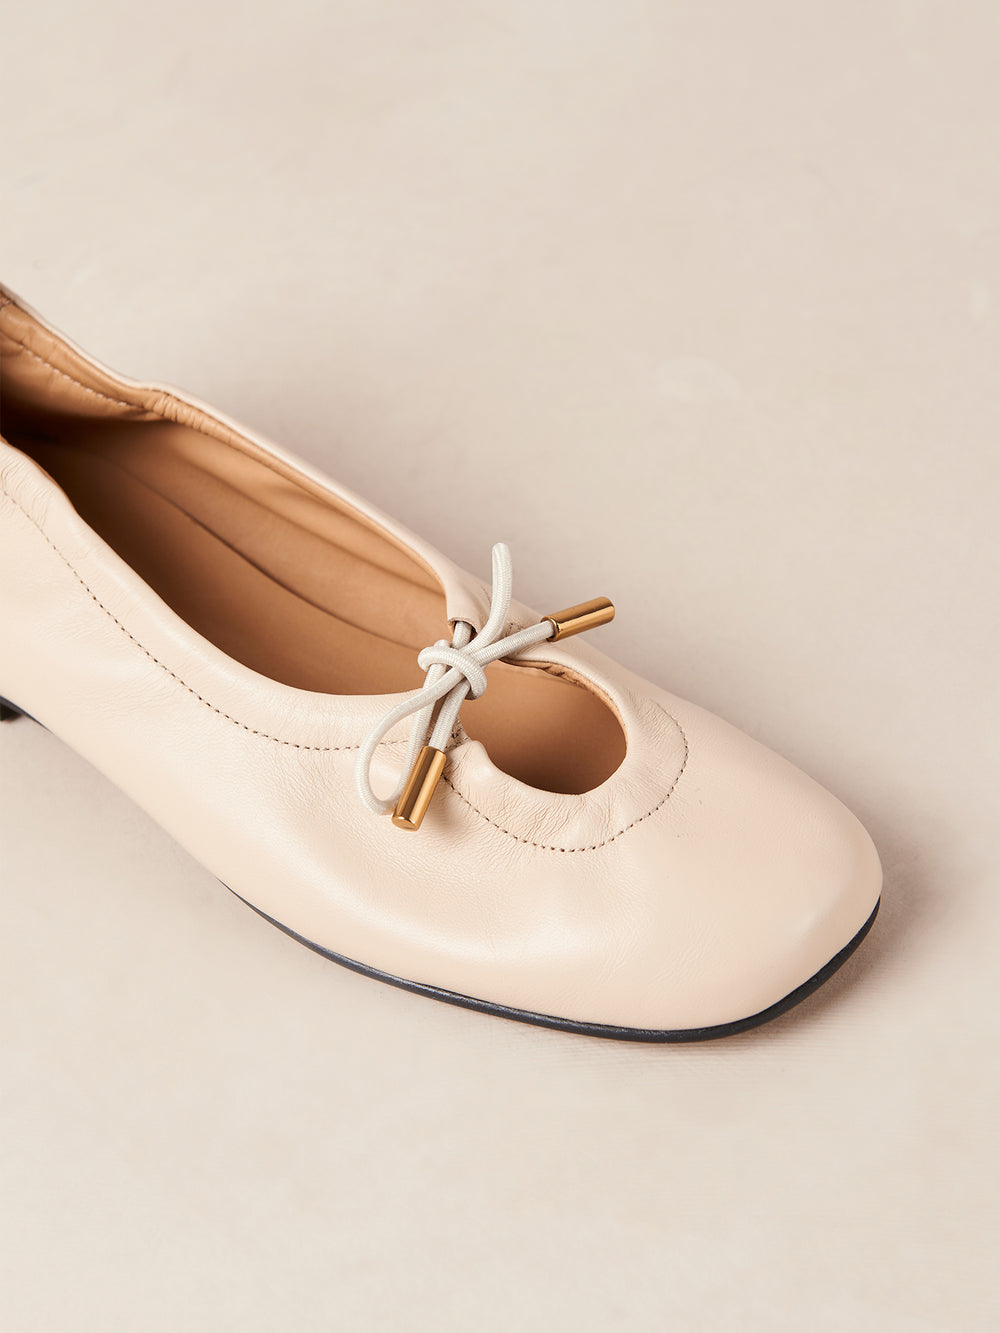 Rosalind Ballet Flats - Cream